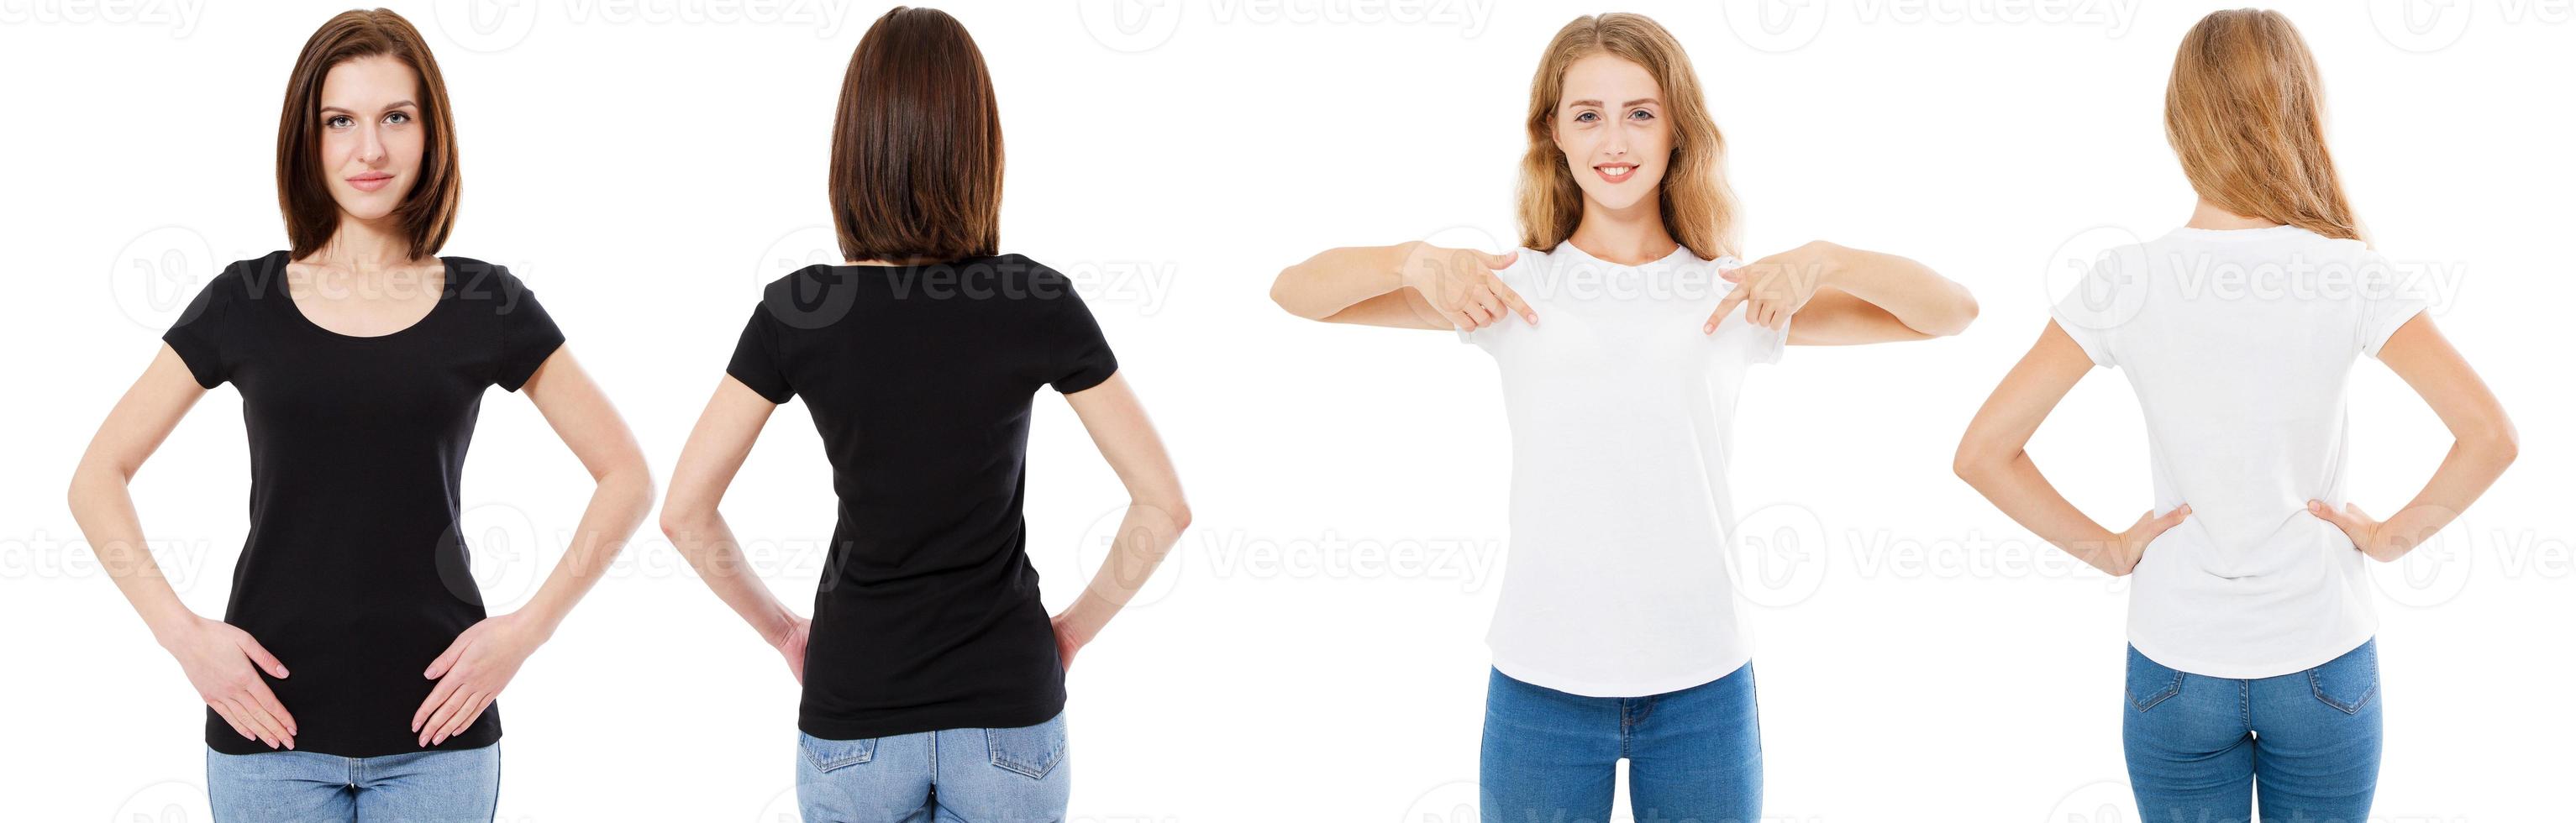 conjunto de camiseta. Vista frontal y posterior morena y rubia en camiseta blanca y negra aislada. dos niñas en camisa en blanco, maqueta, collage, espacio de copia, plantilla foto